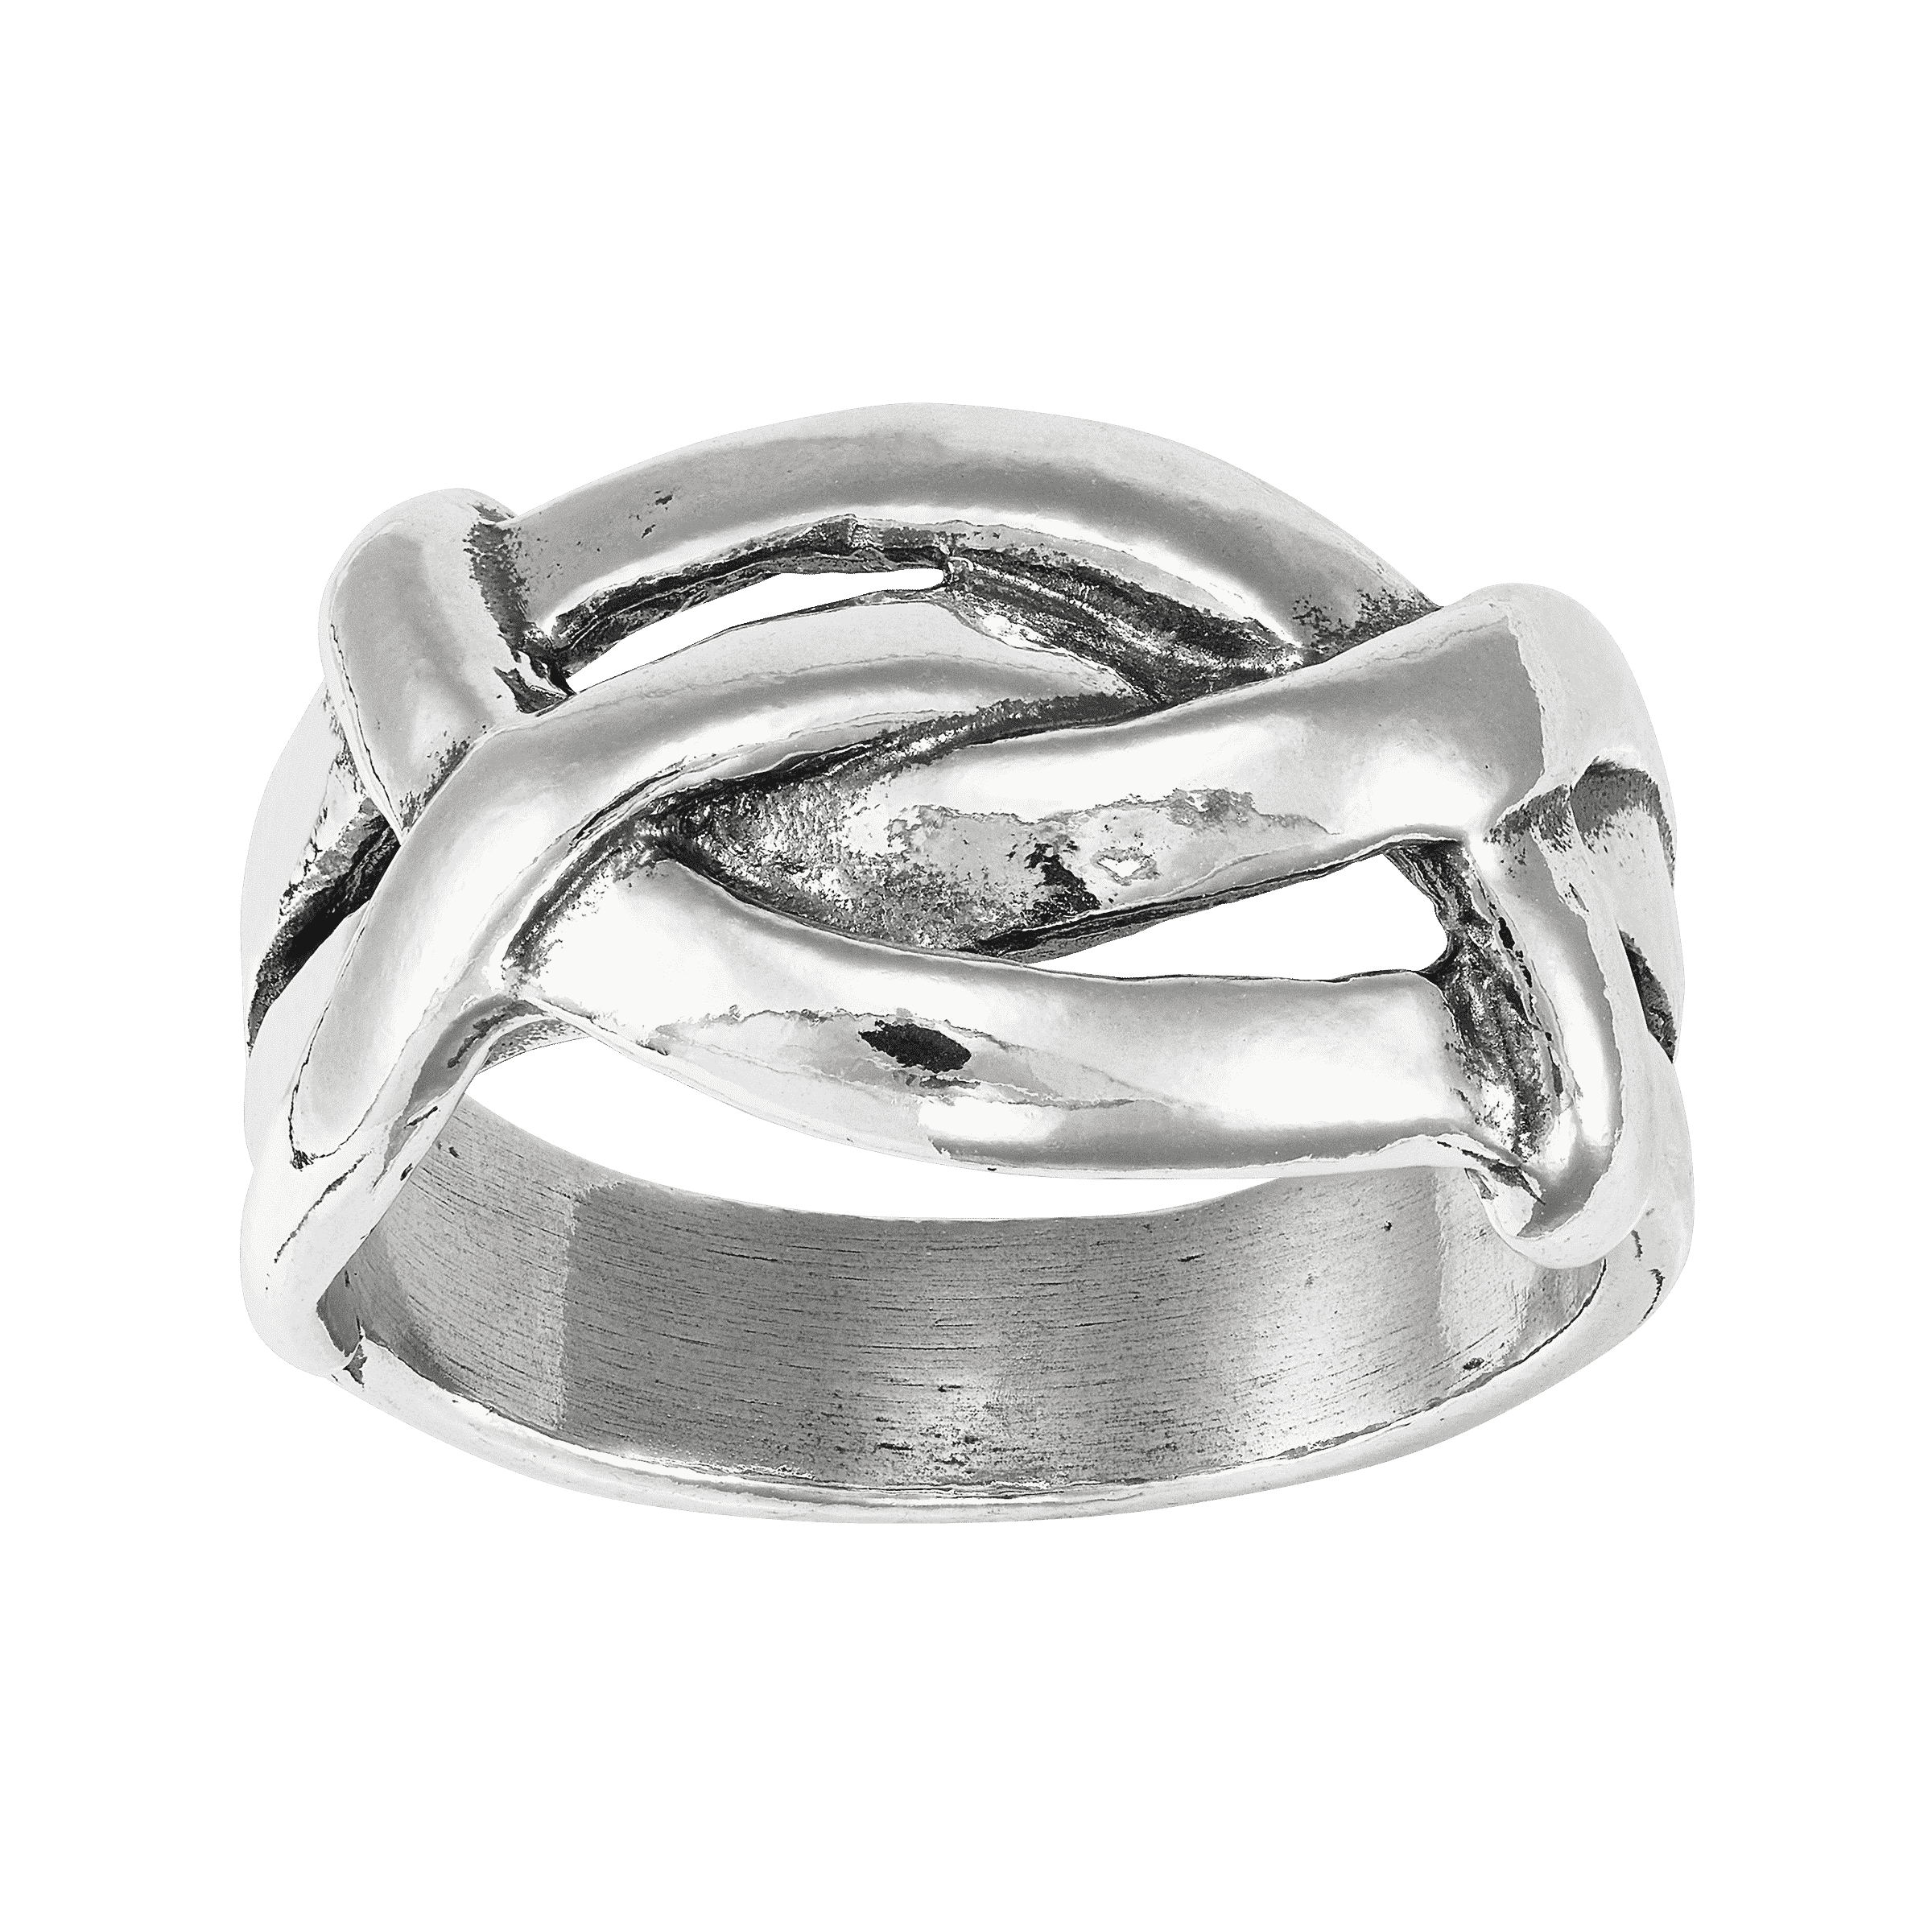 Silpada 'Believe it or Knot' Ring in Sterling Silver | Silpada